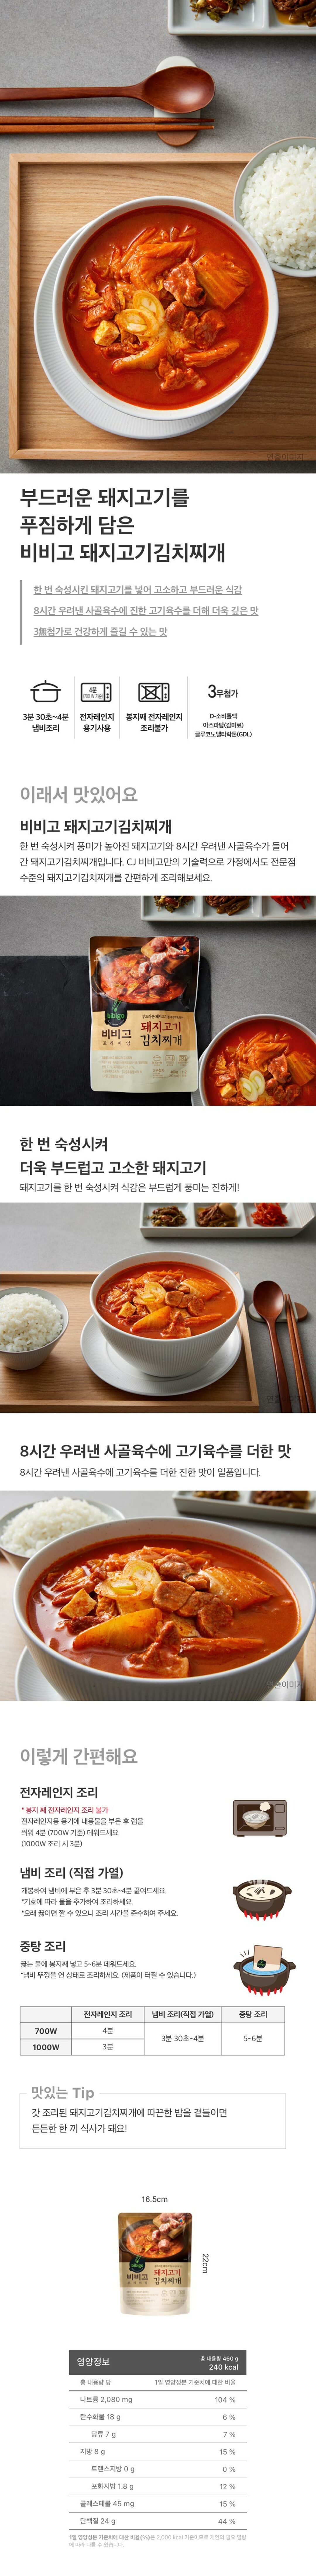 비비고-돼지고기김치찌개-460g-1000140145160